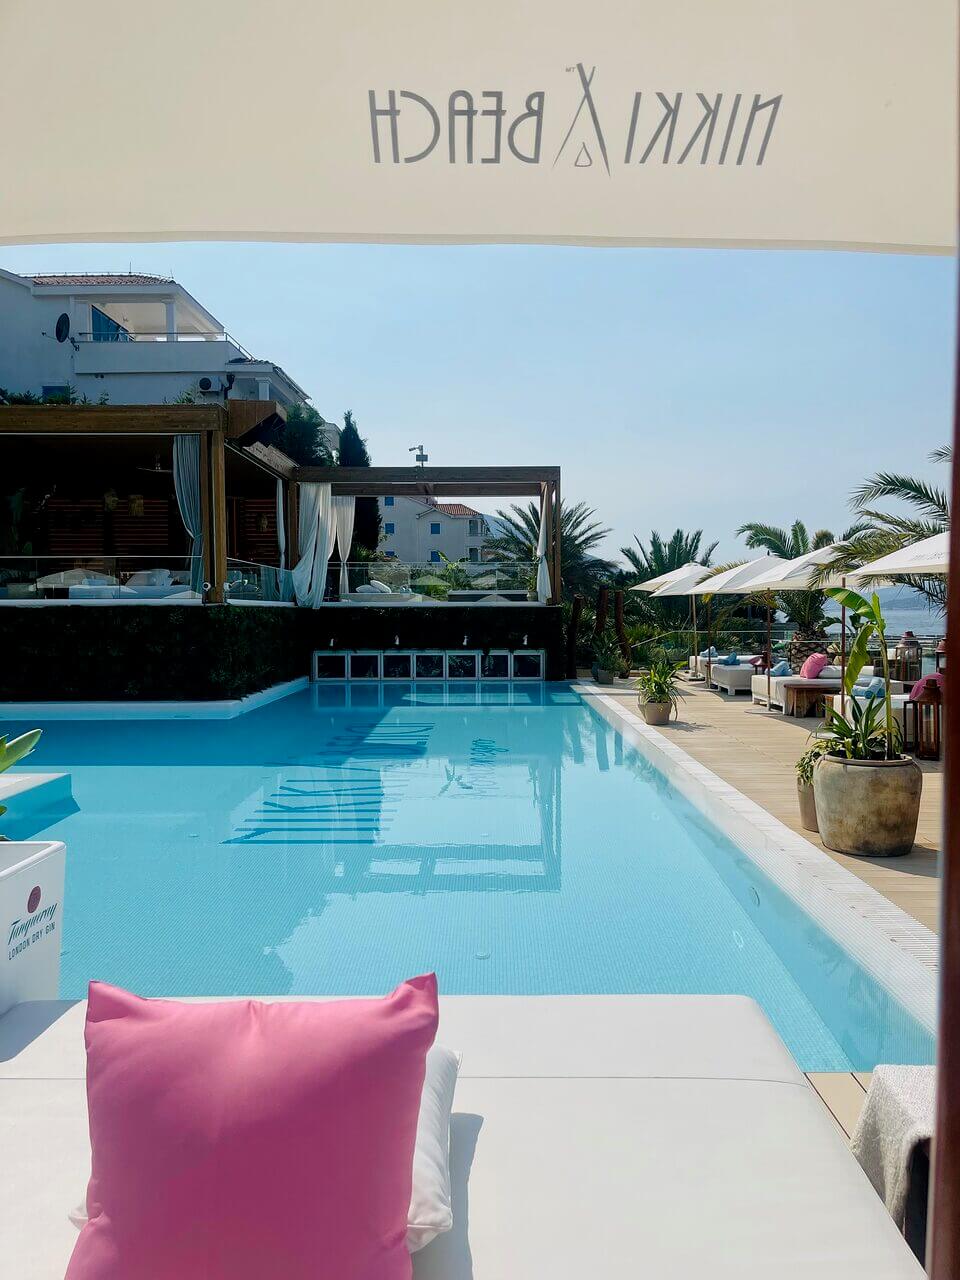 Eine ruhige Poolumgebung mit einem großen Swimmingpool mit strahlend blauem Wasser, umgeben von Palmen und weißen Liegestühlen. Die Aussicht wird teilweise durch eine Markise mit gespiegeltem Text, wahrscheinlich einem Markennamen, verdeckt.